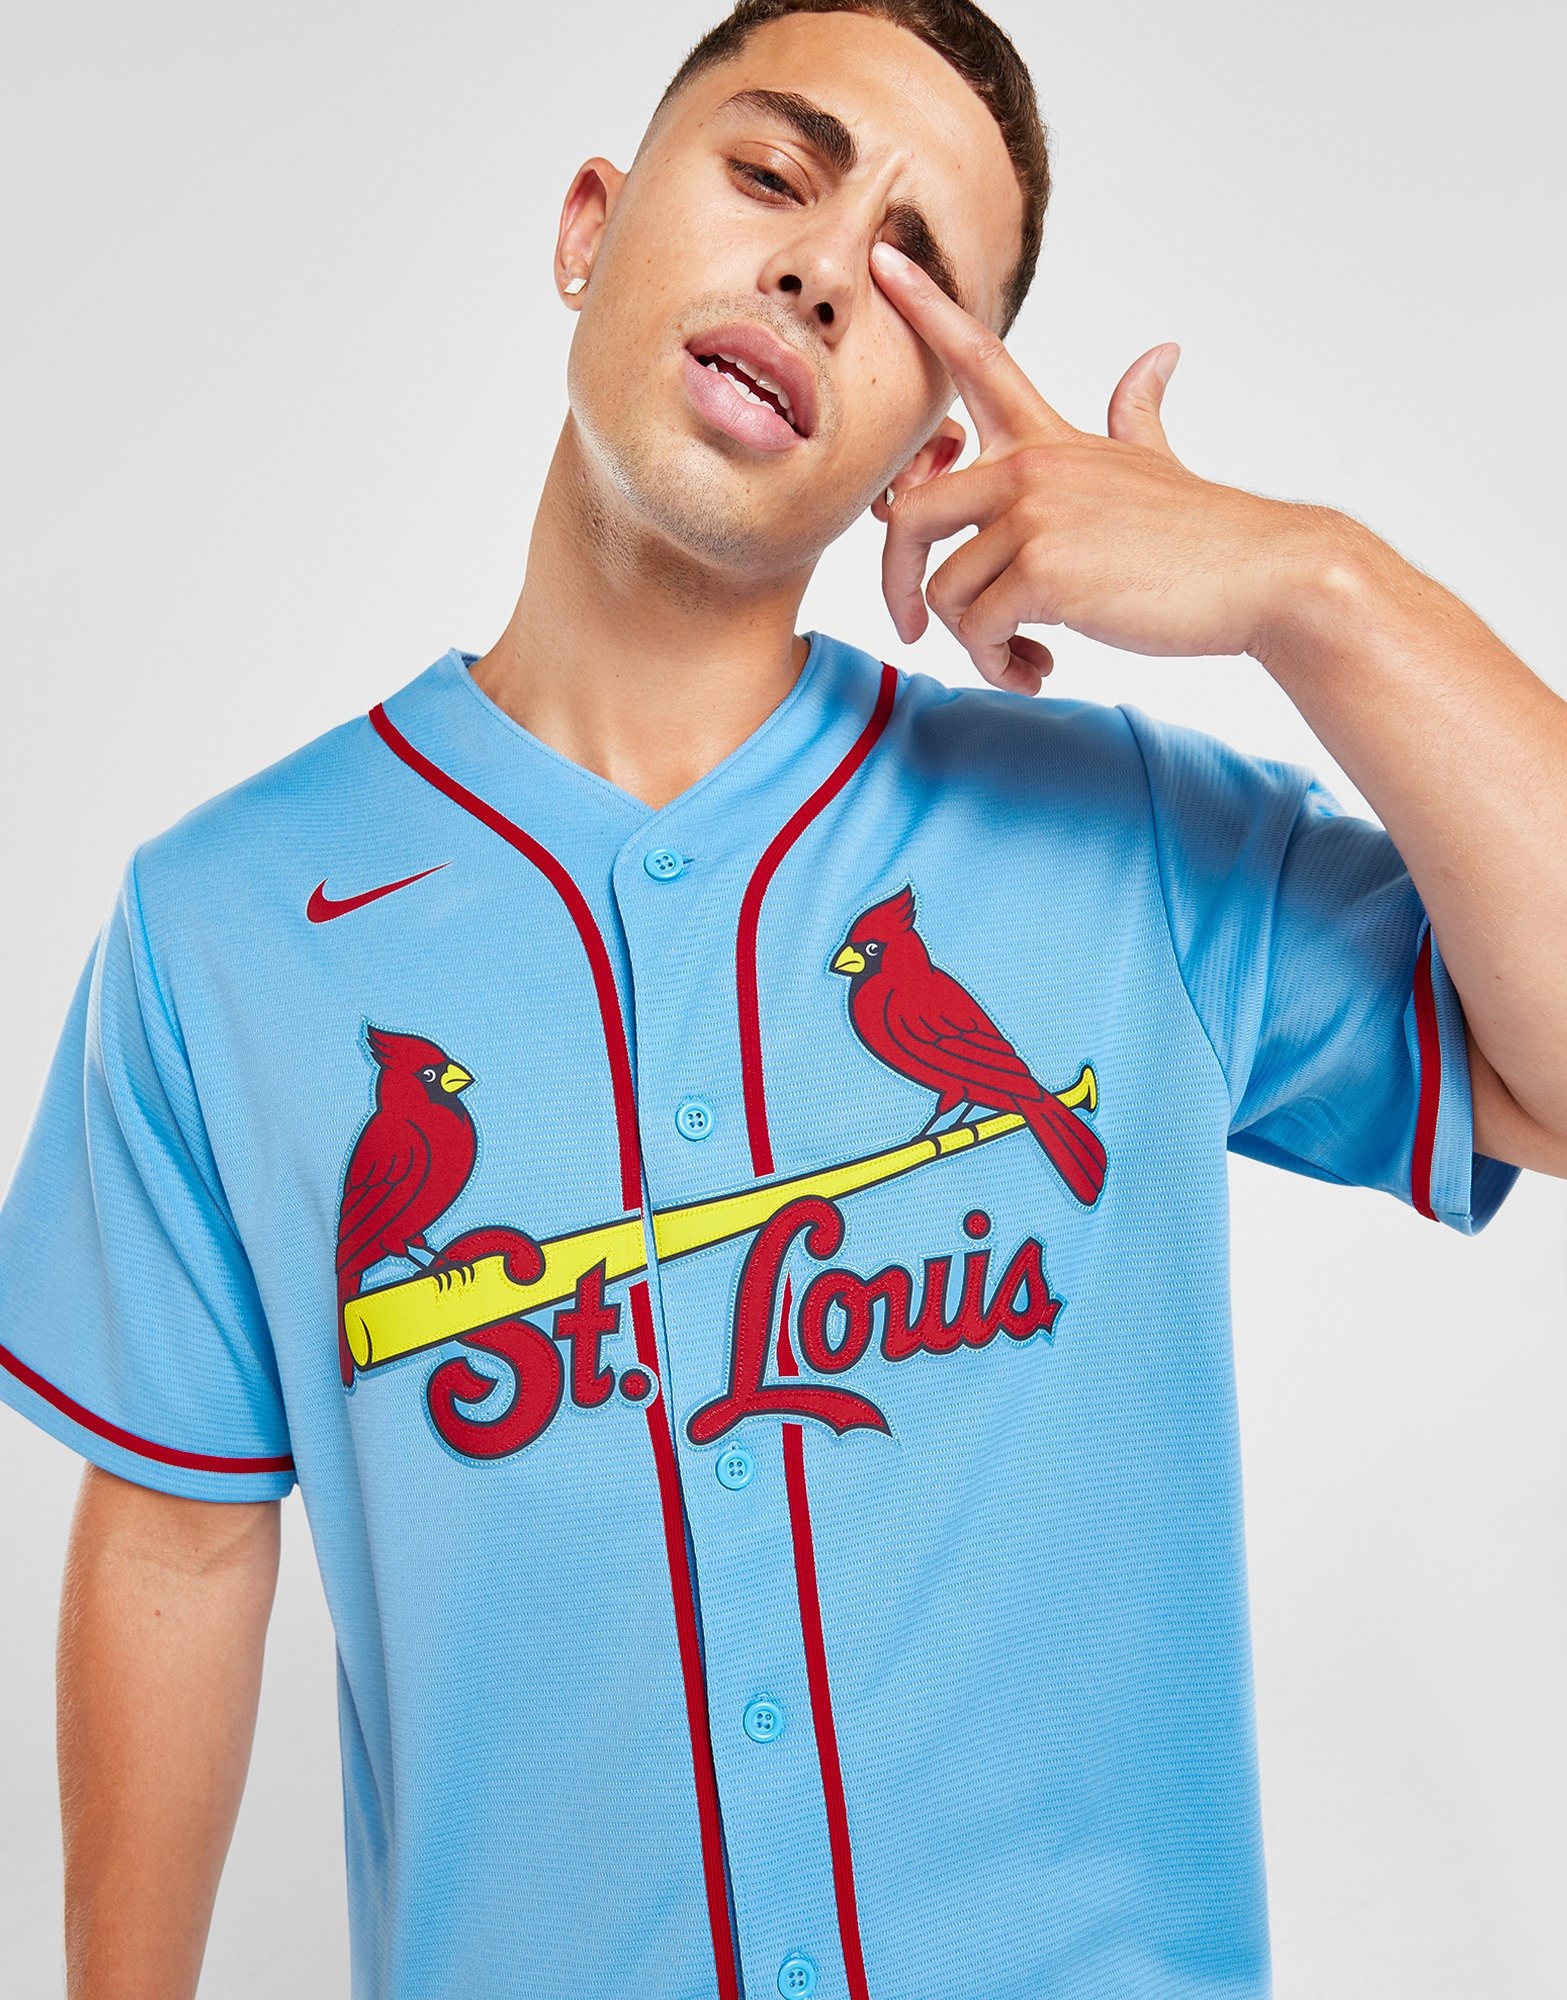 St Louis Cardinals Youth Light Blue Alternate Baseball Jersey